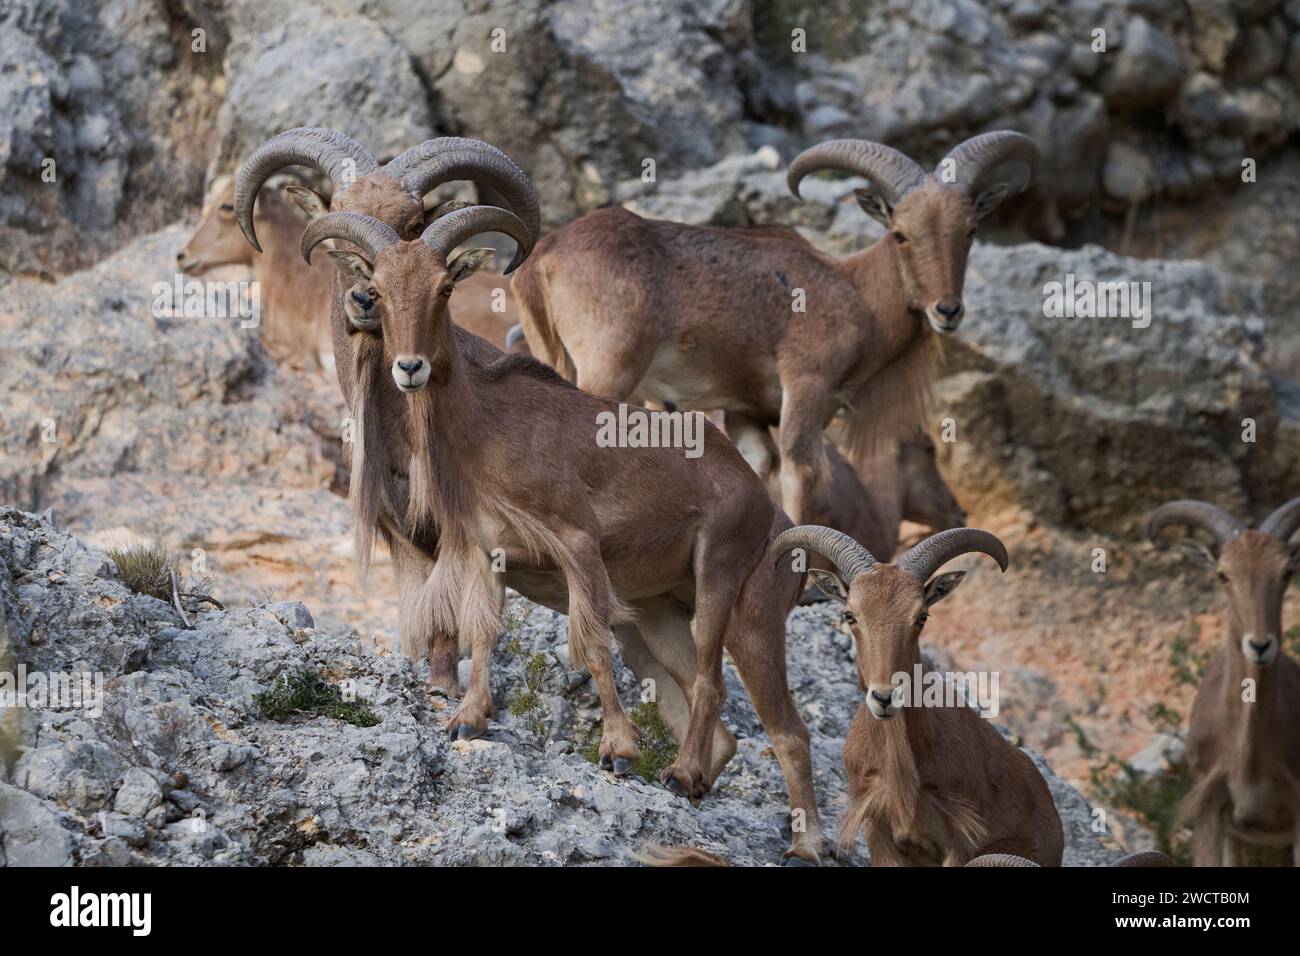 Un groupe de moutons barbaresques rassemblent sur terrain rocheux leurs cornes incurvées caractéristiques de l'espèce Banque D'Images